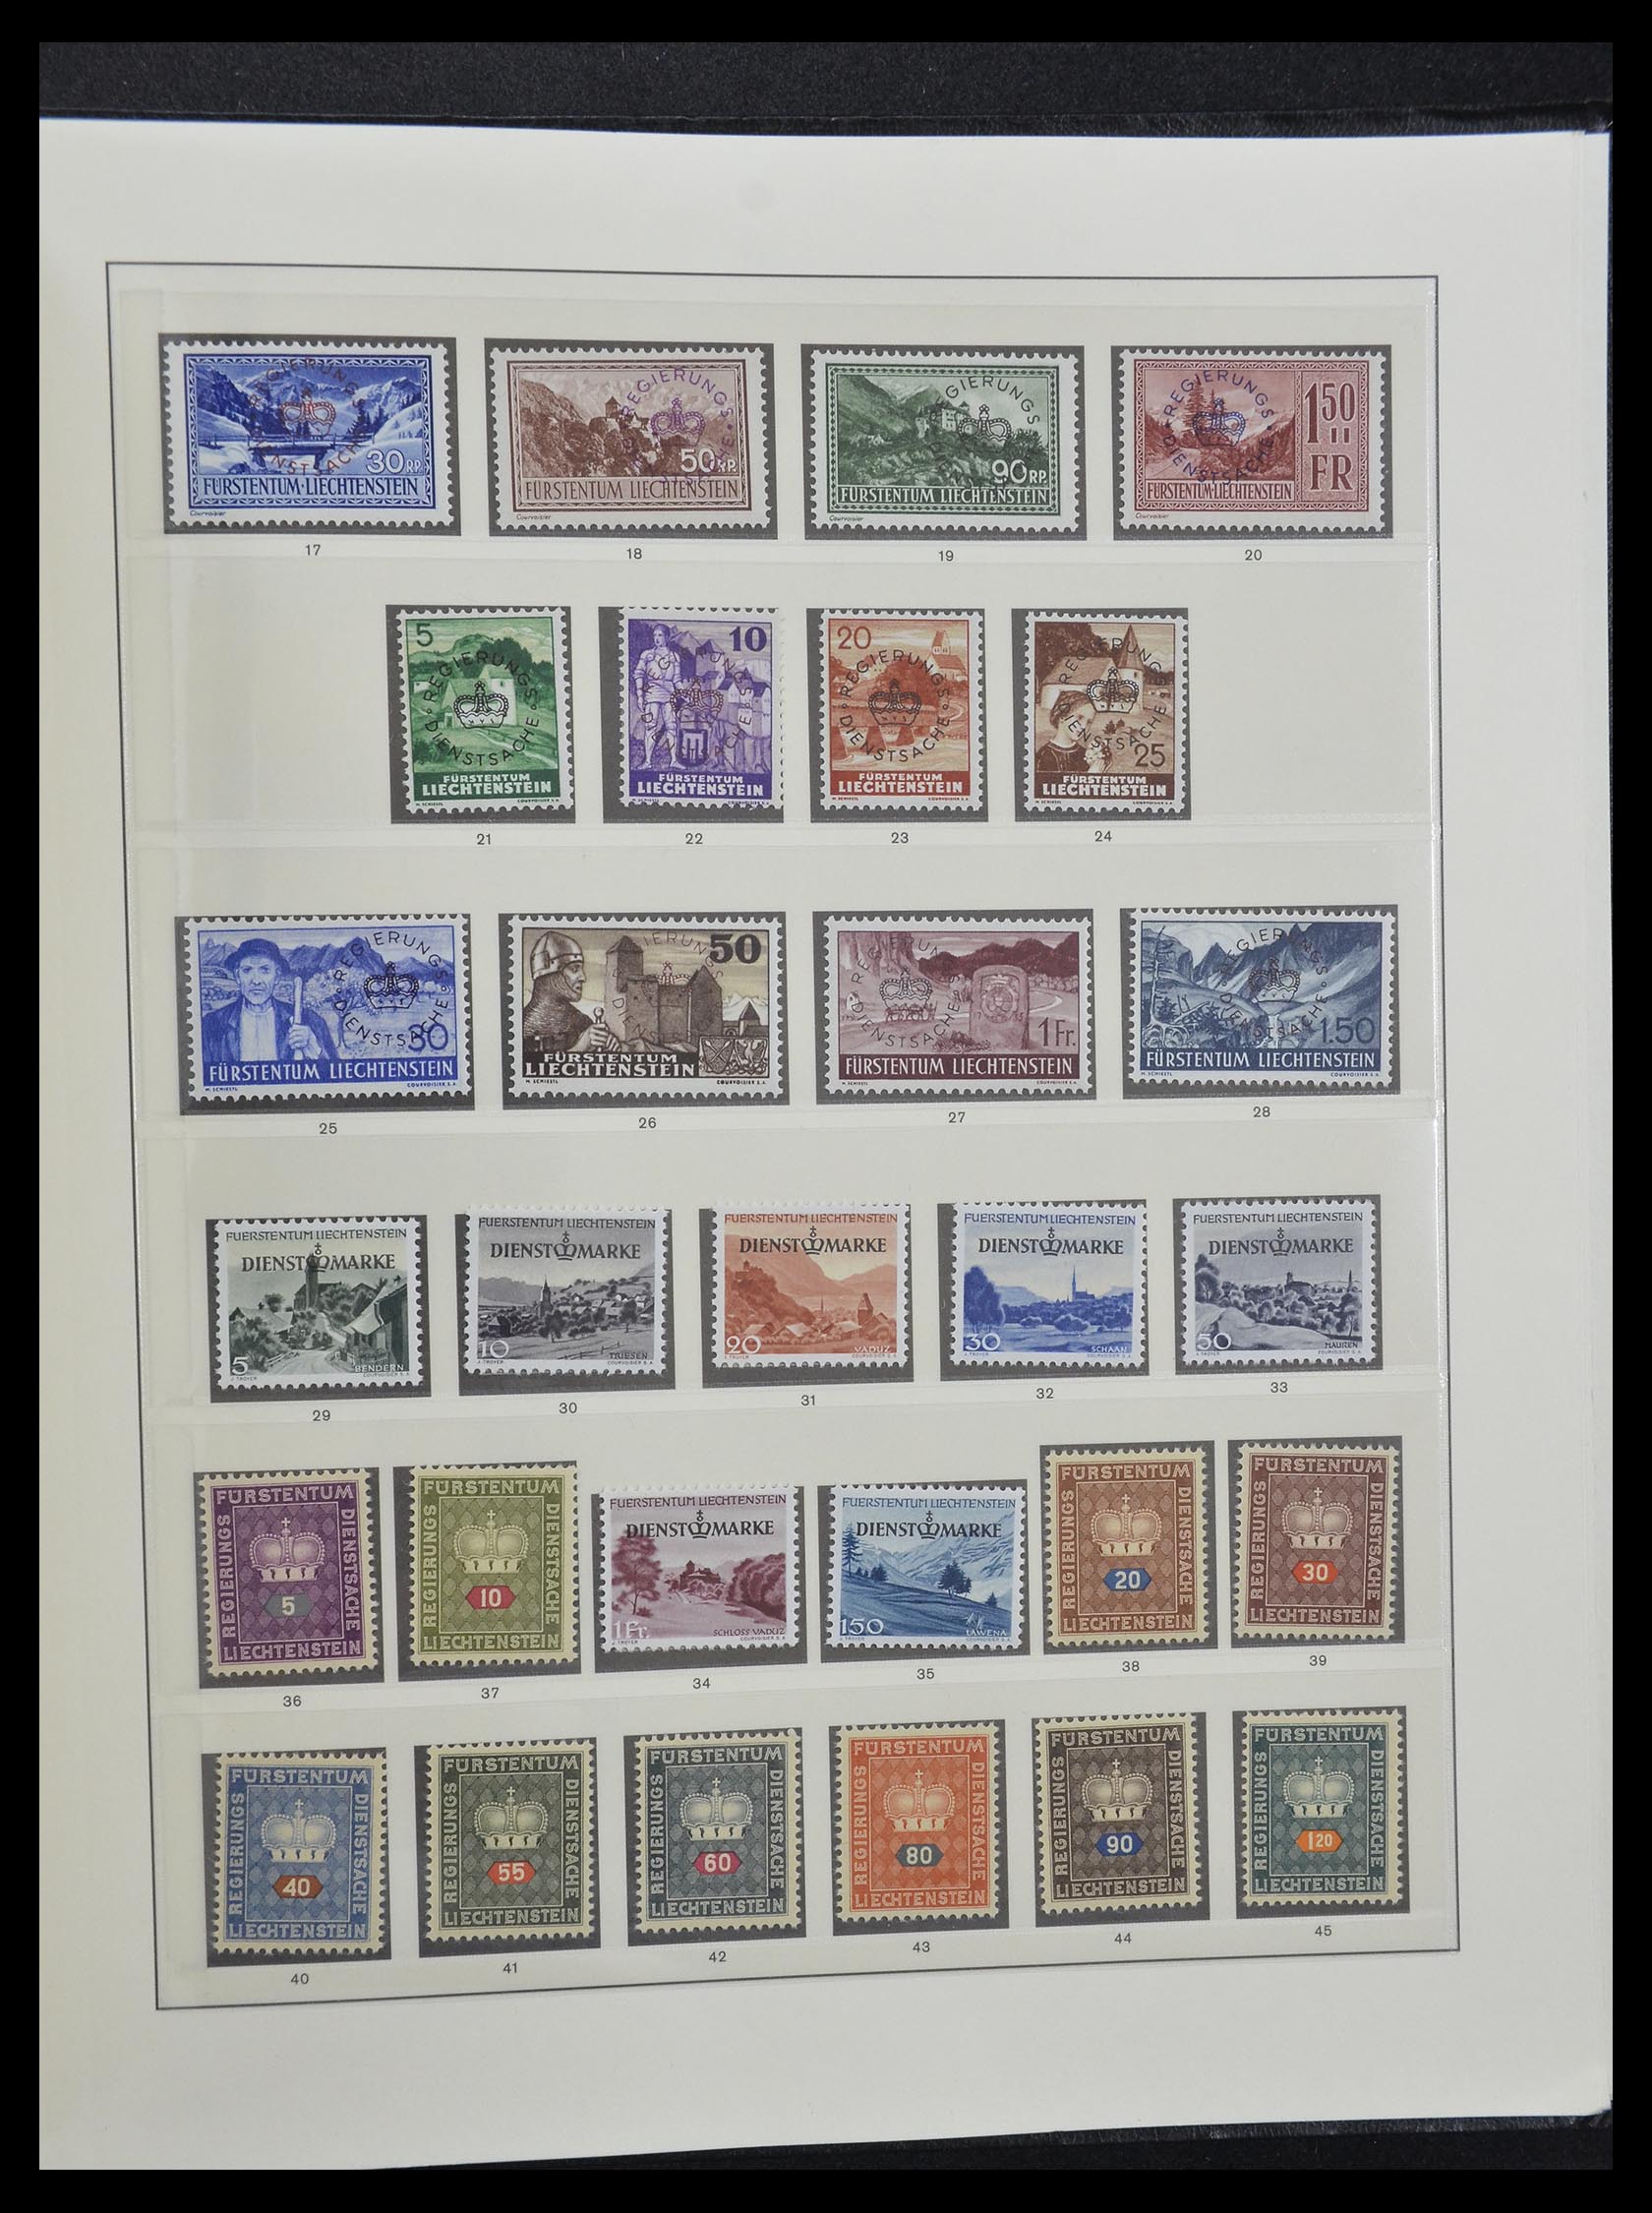 33140 054 - Stamp collection 33140 Liechtenstein 1912-1990.